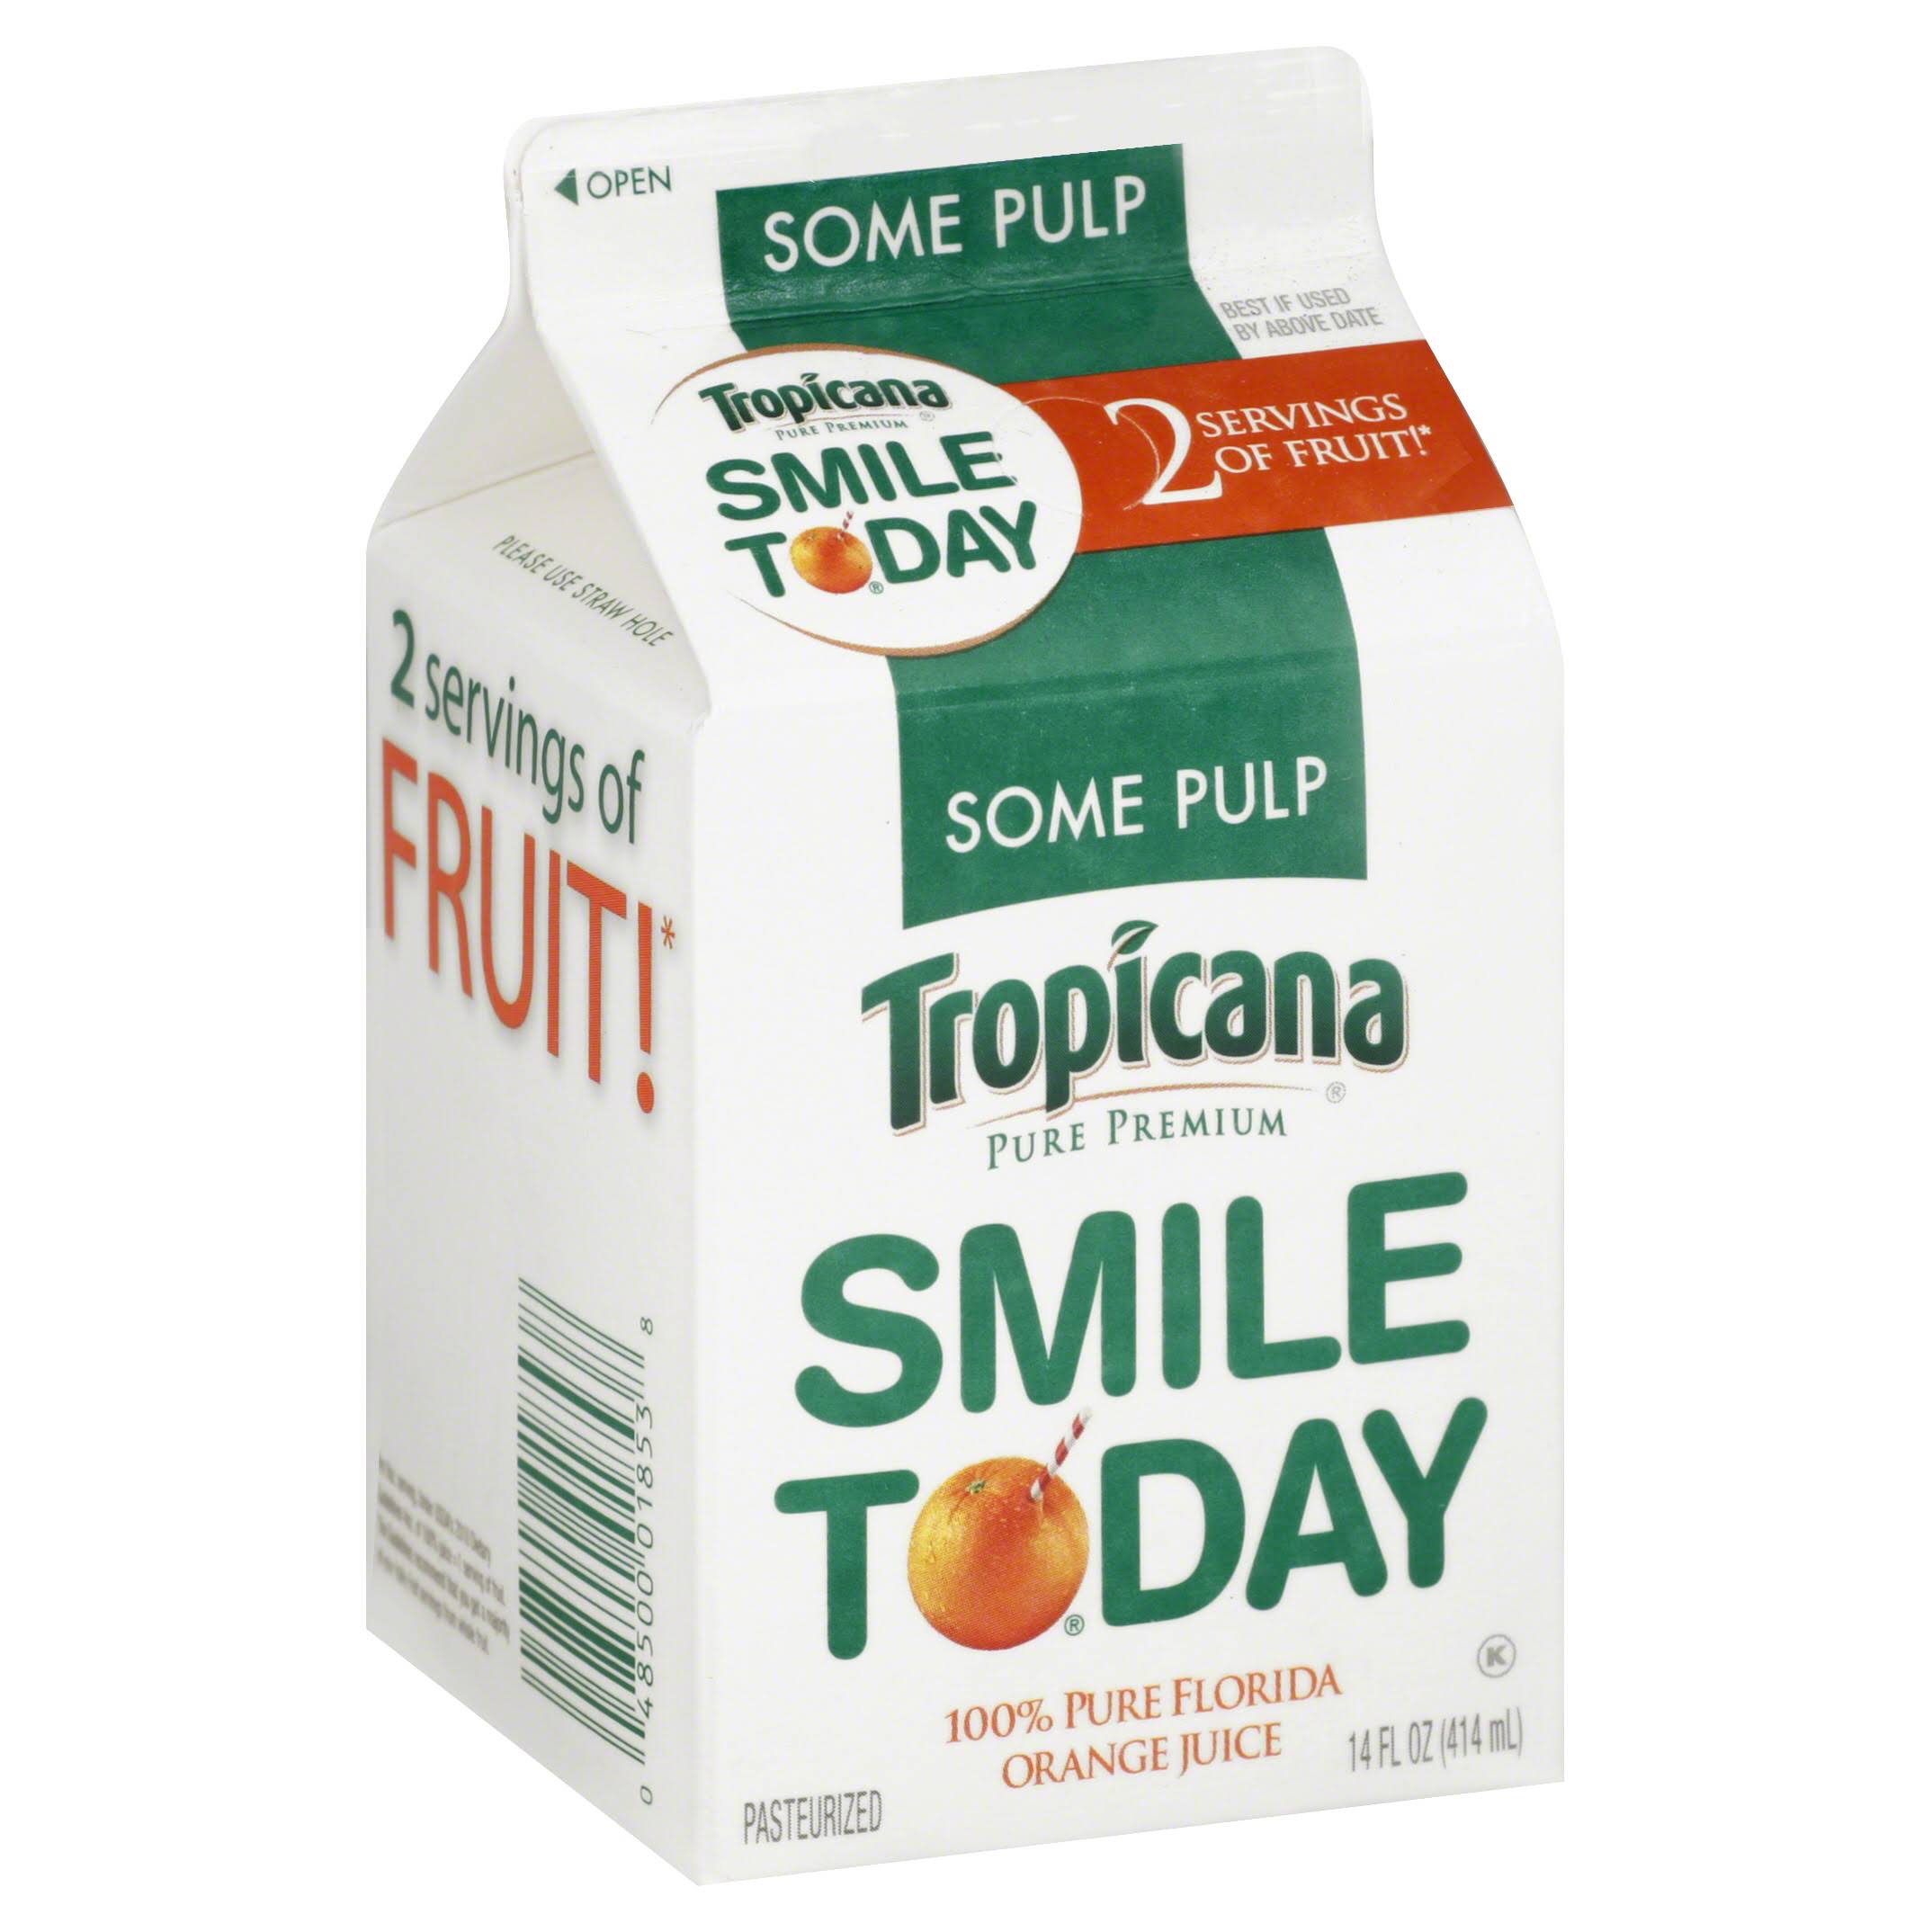 Tropicana Some Pulp Pure Premium Florida Orange Juice - 14 Oz